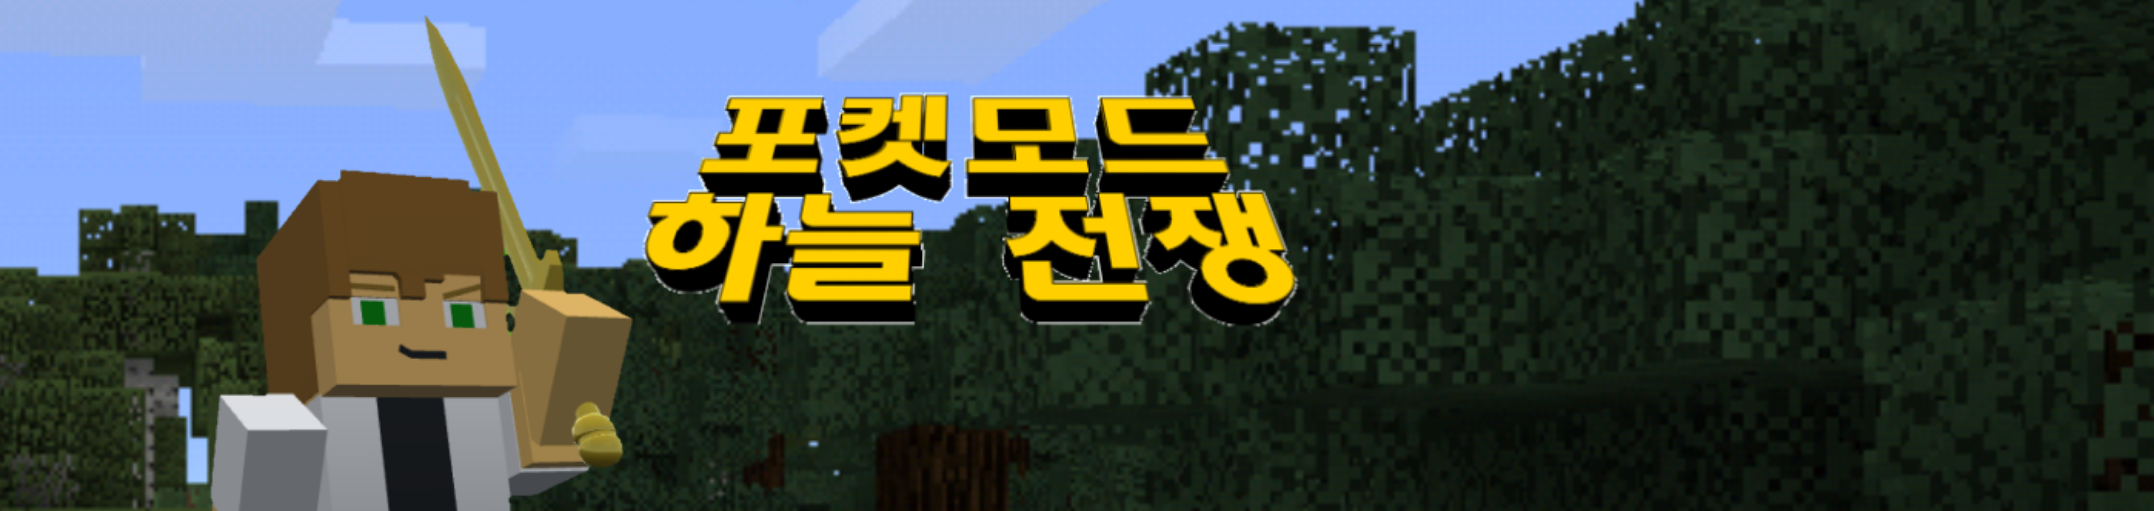 Banner for Sky Wars Minecraft server